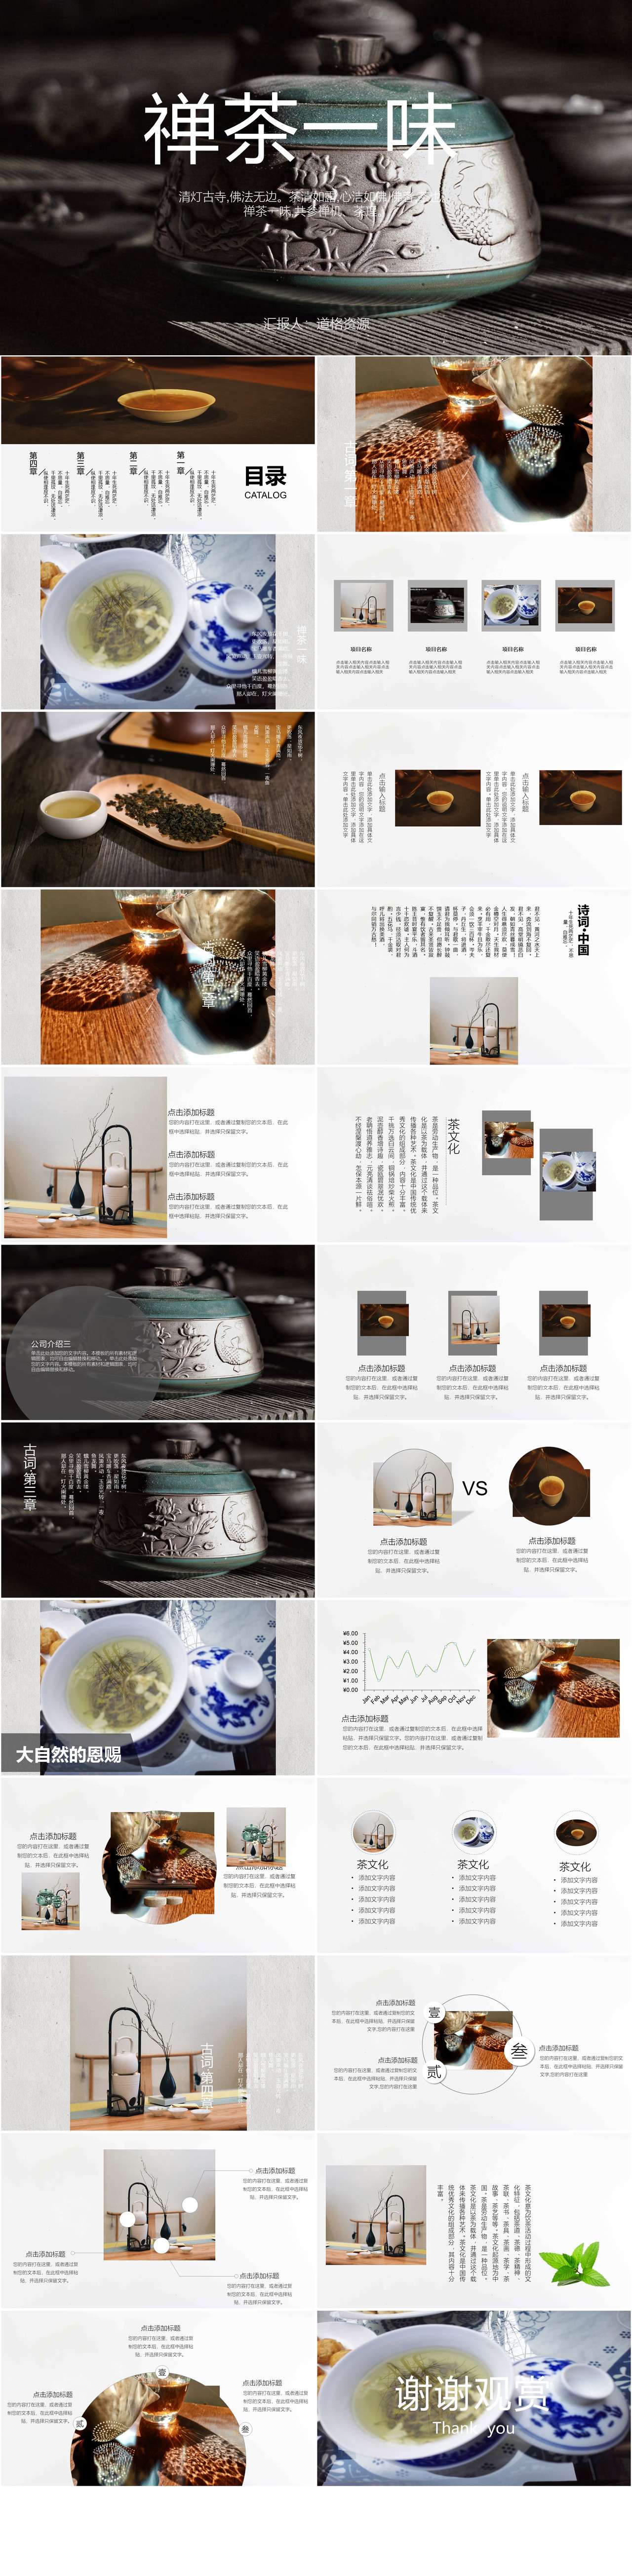 禅茶一味杂志风茶产品介绍PPT模板